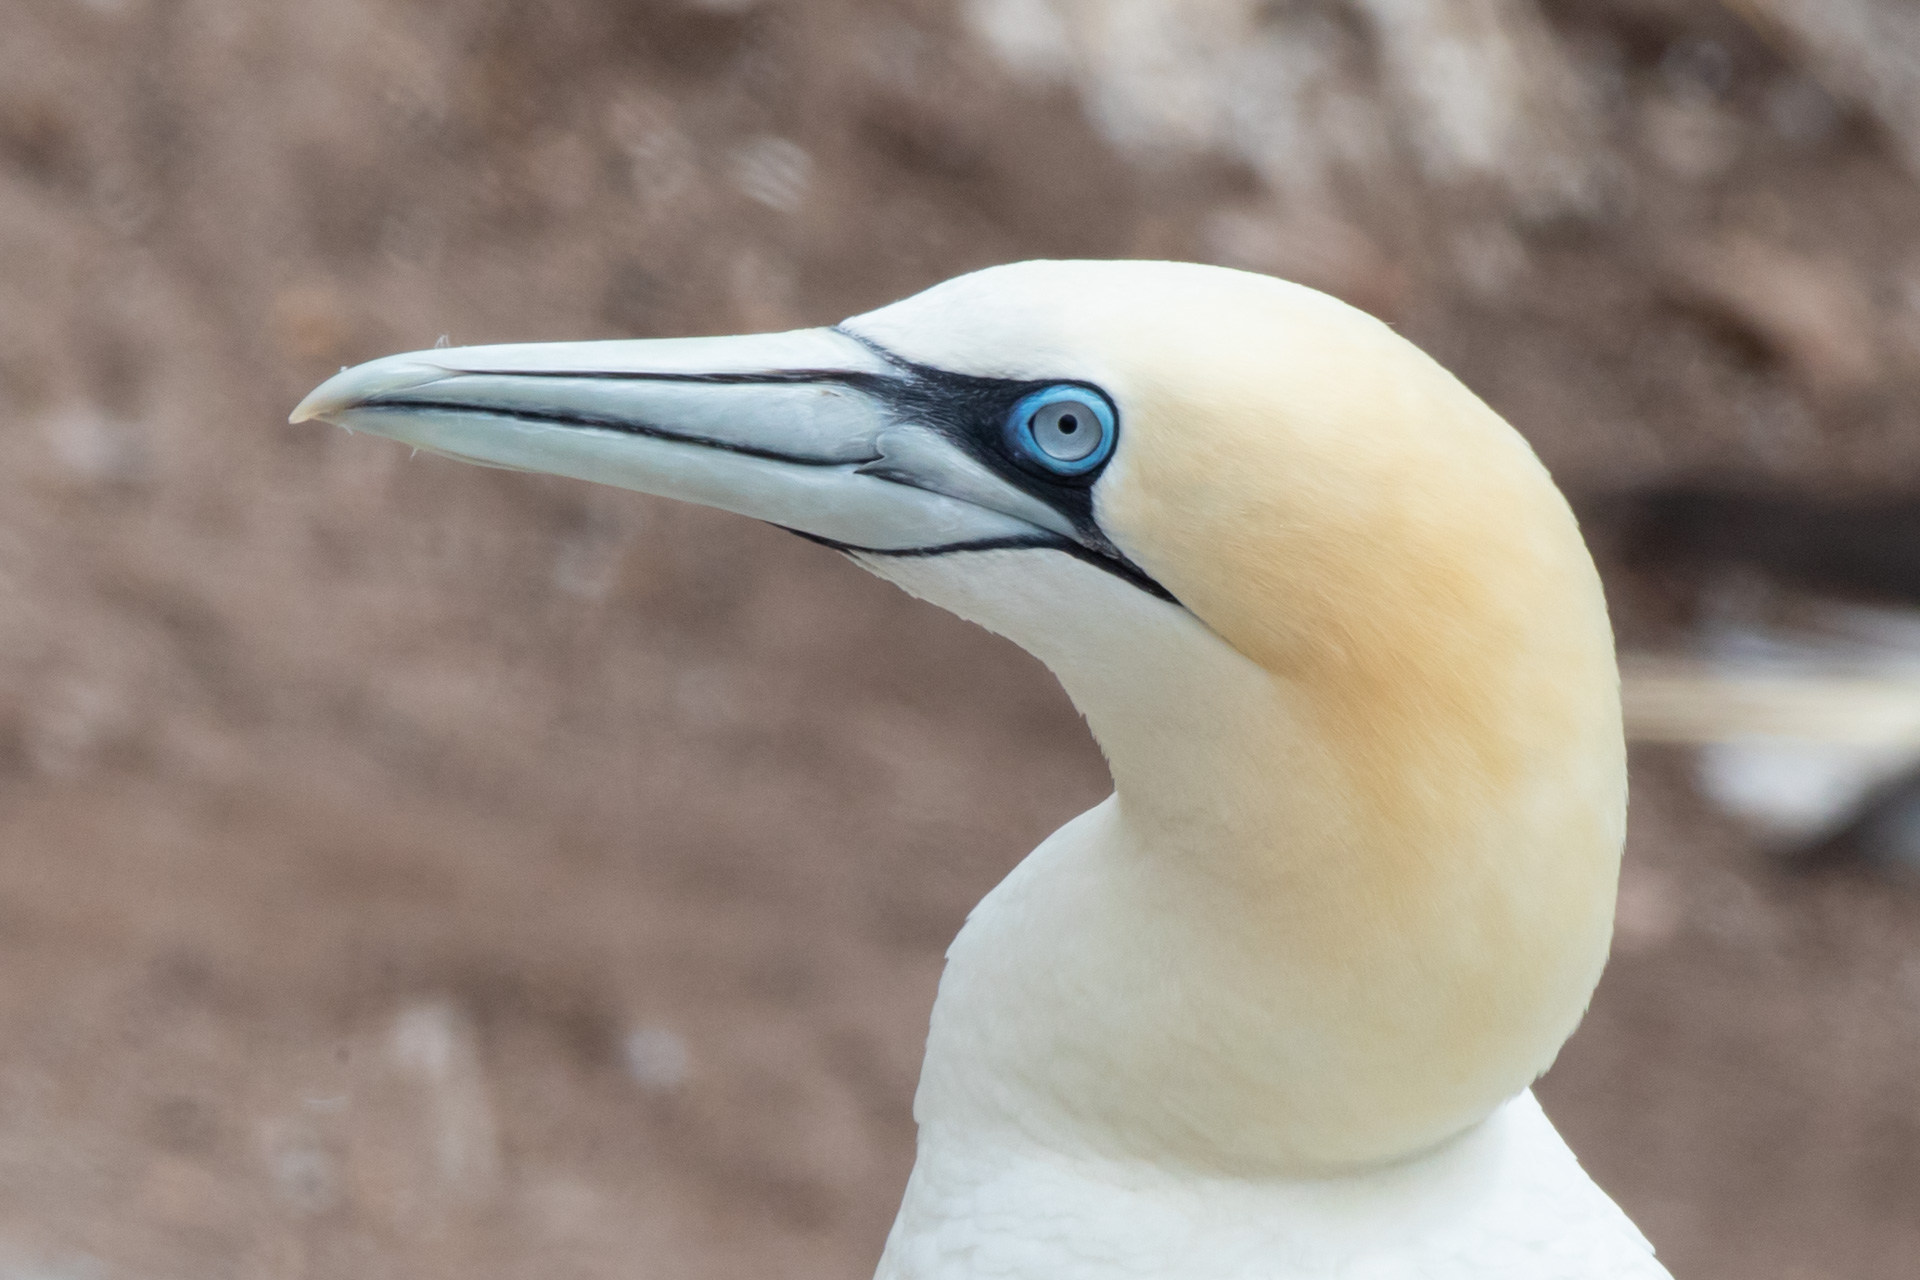 The Gannet has no external nostrils on the beak